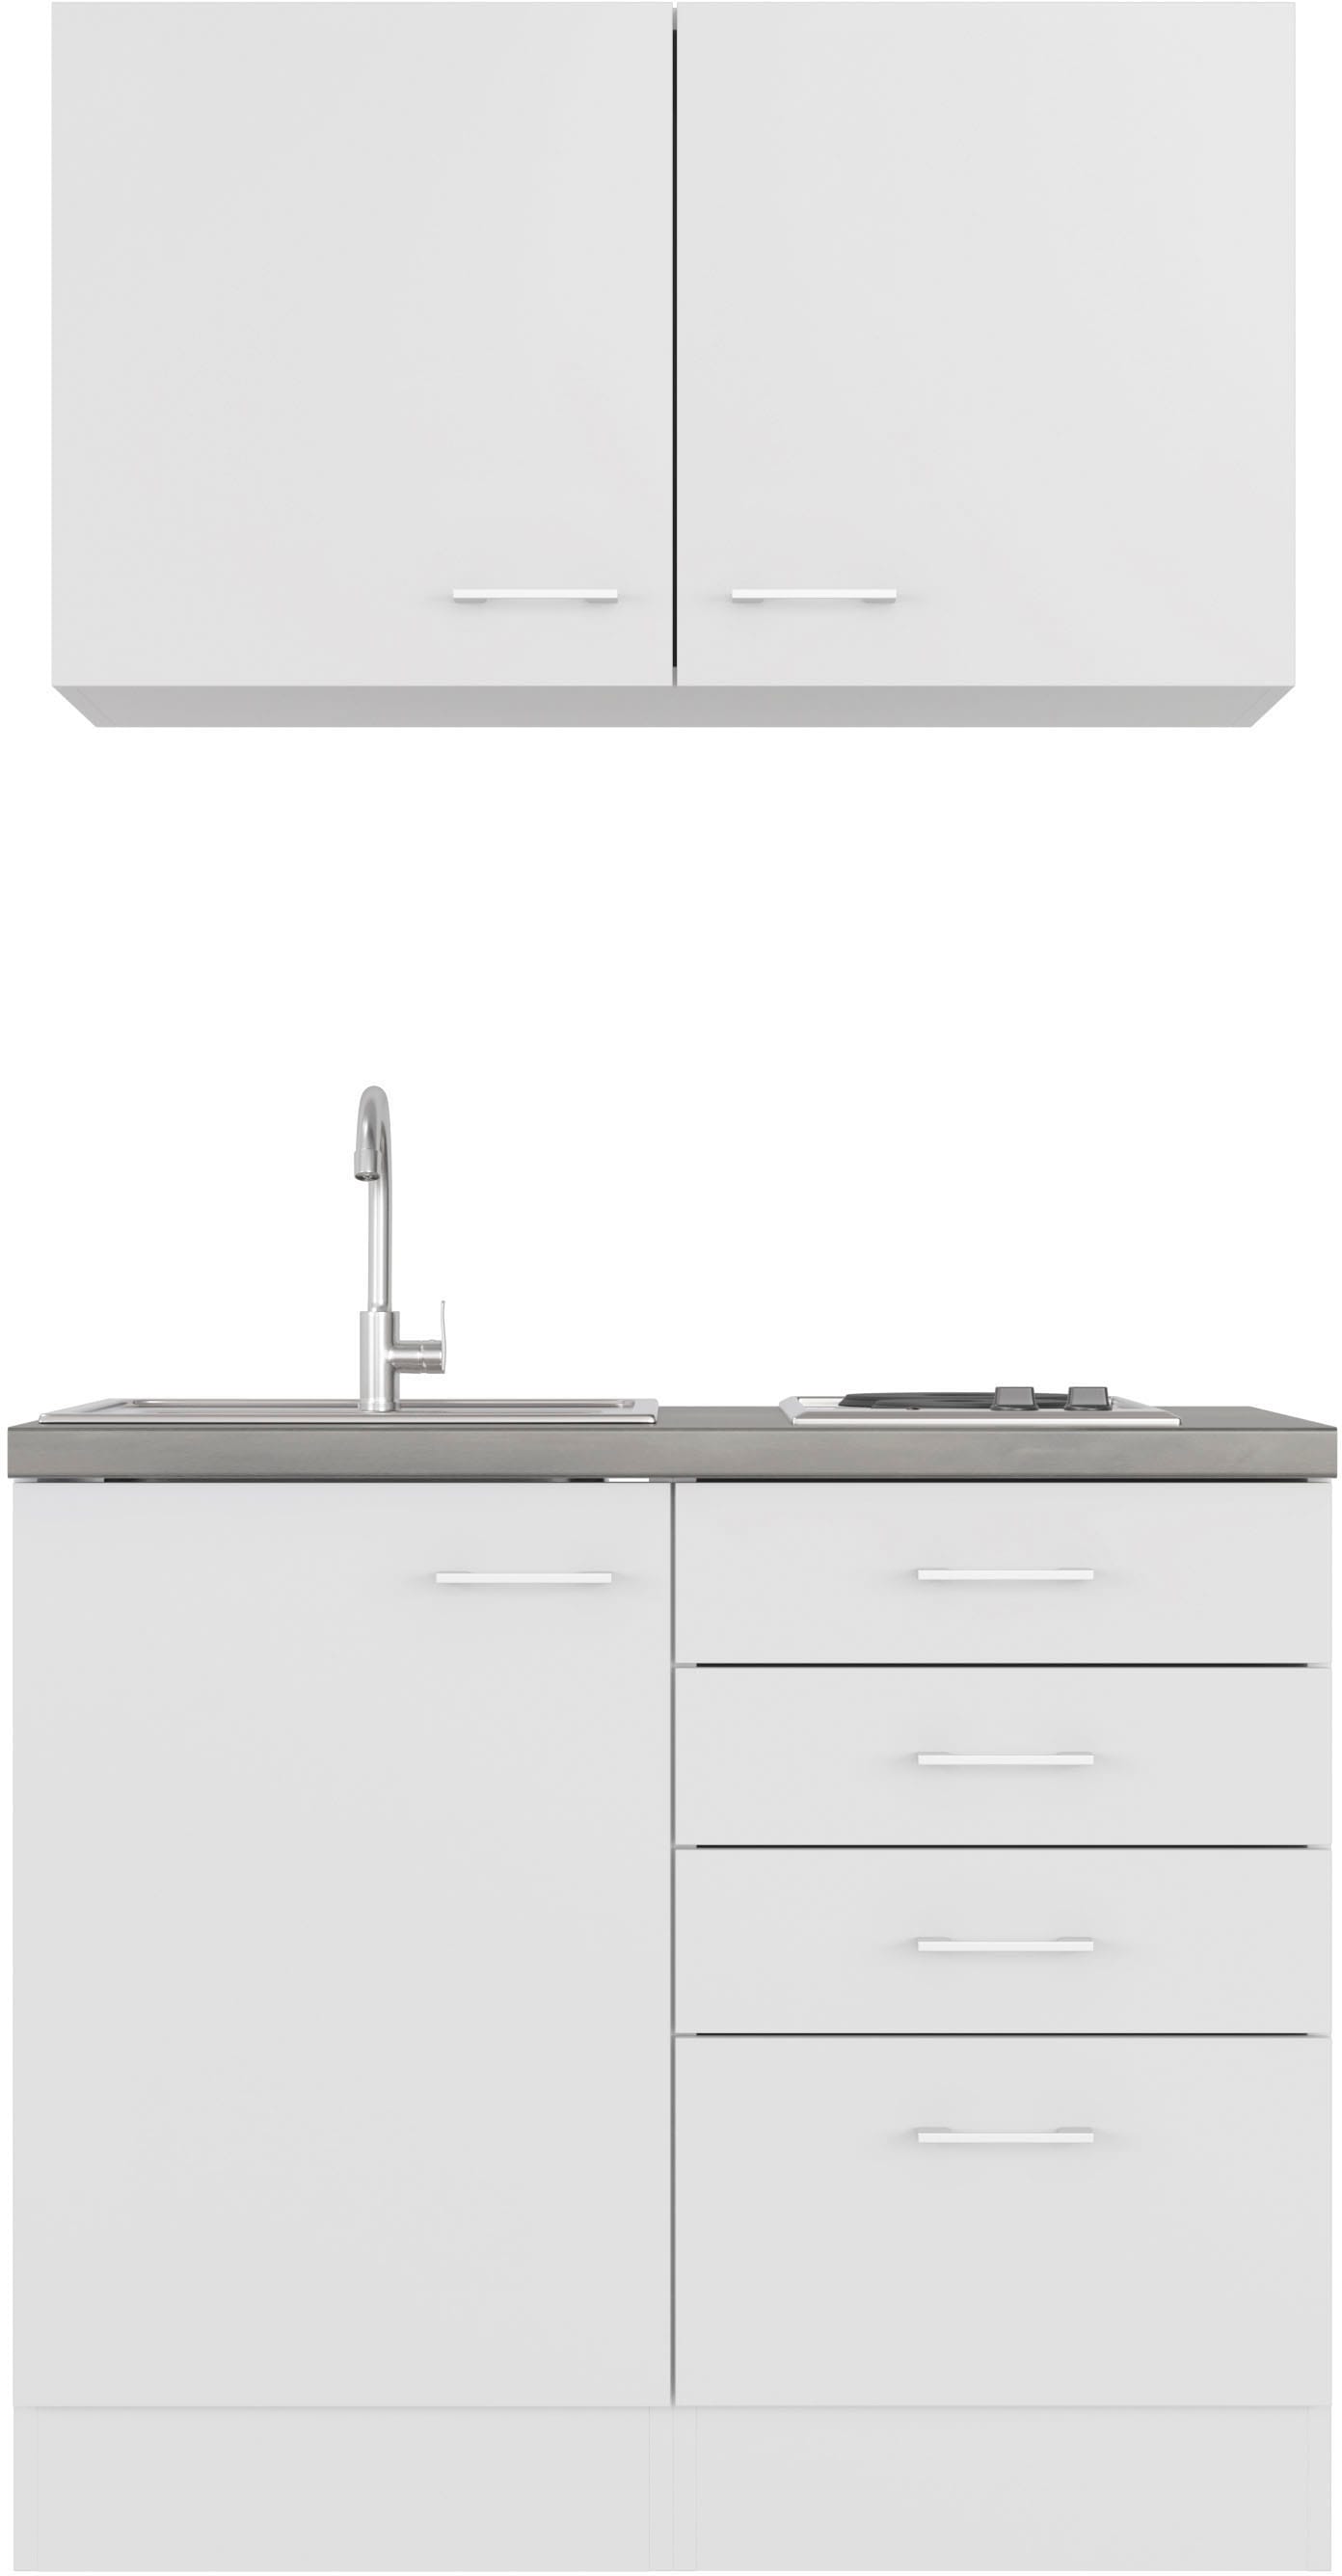 Flex-Well Küche »Lucca«, Breite 100 cm, mit Kochfeld und Spüle, in weiteren  Farben erhältlich kaufen bei OTTO | Spülenschränke